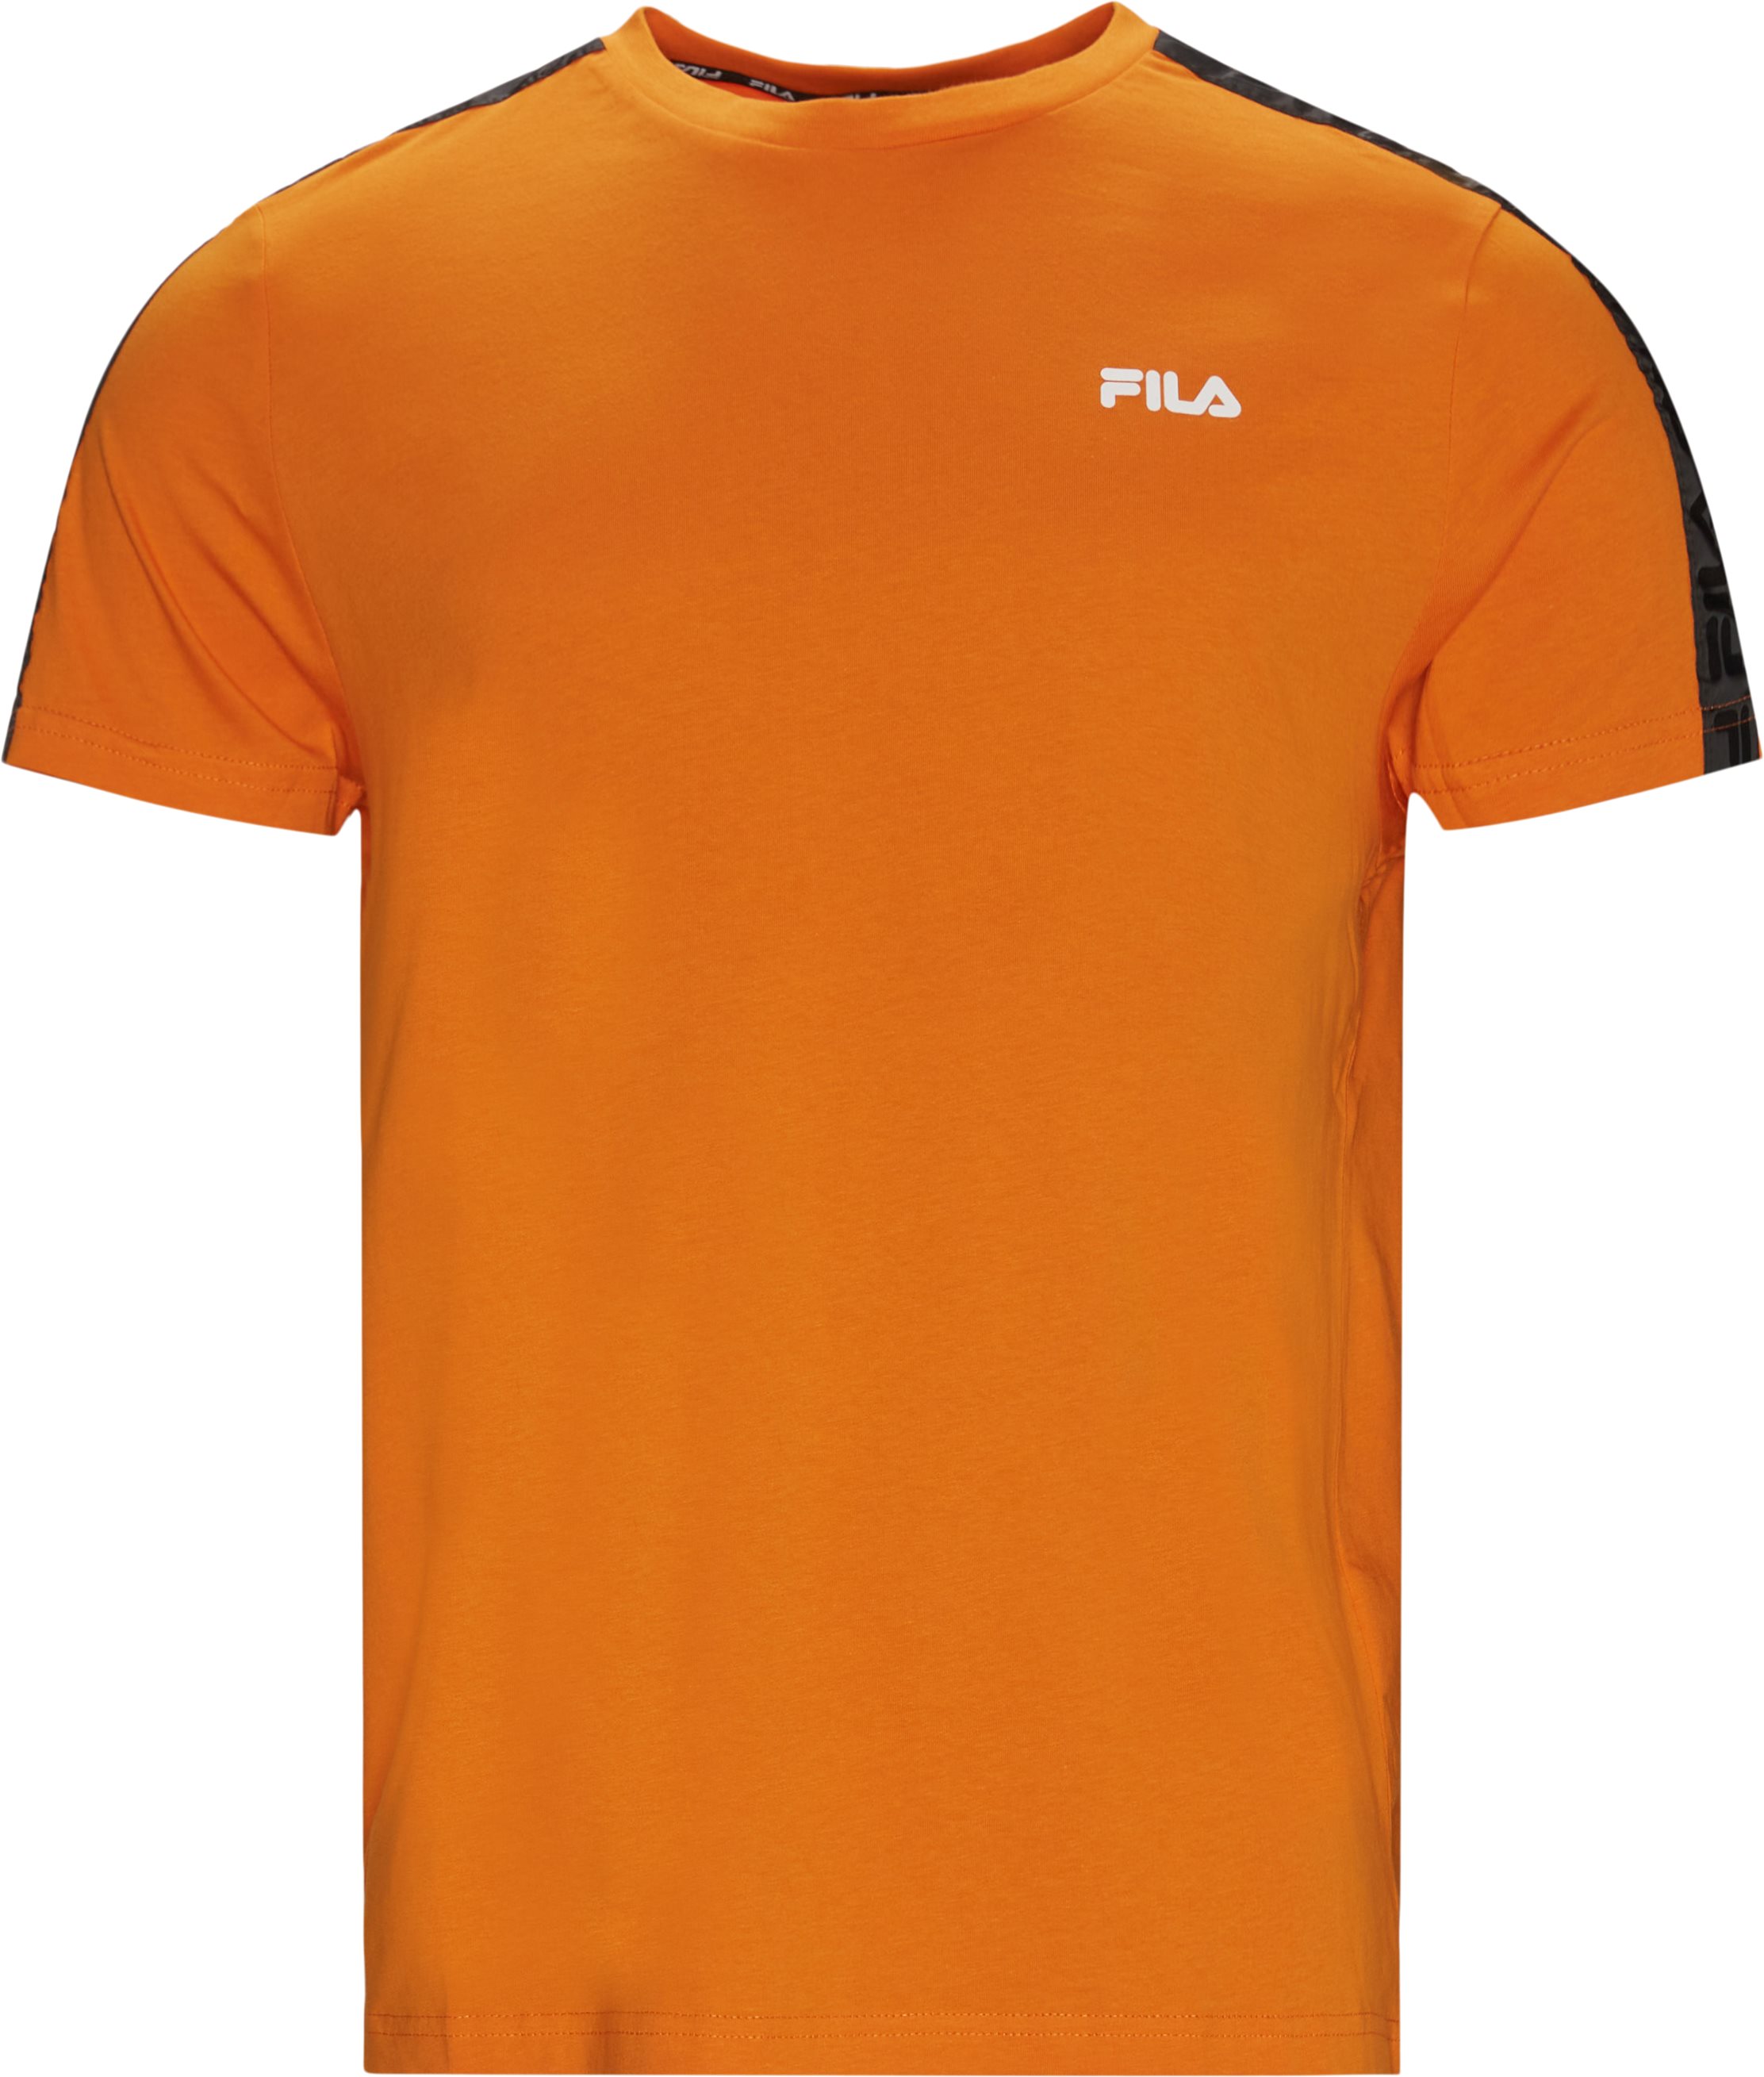 Nam Tee - T-shirts - Regular fit - Orange